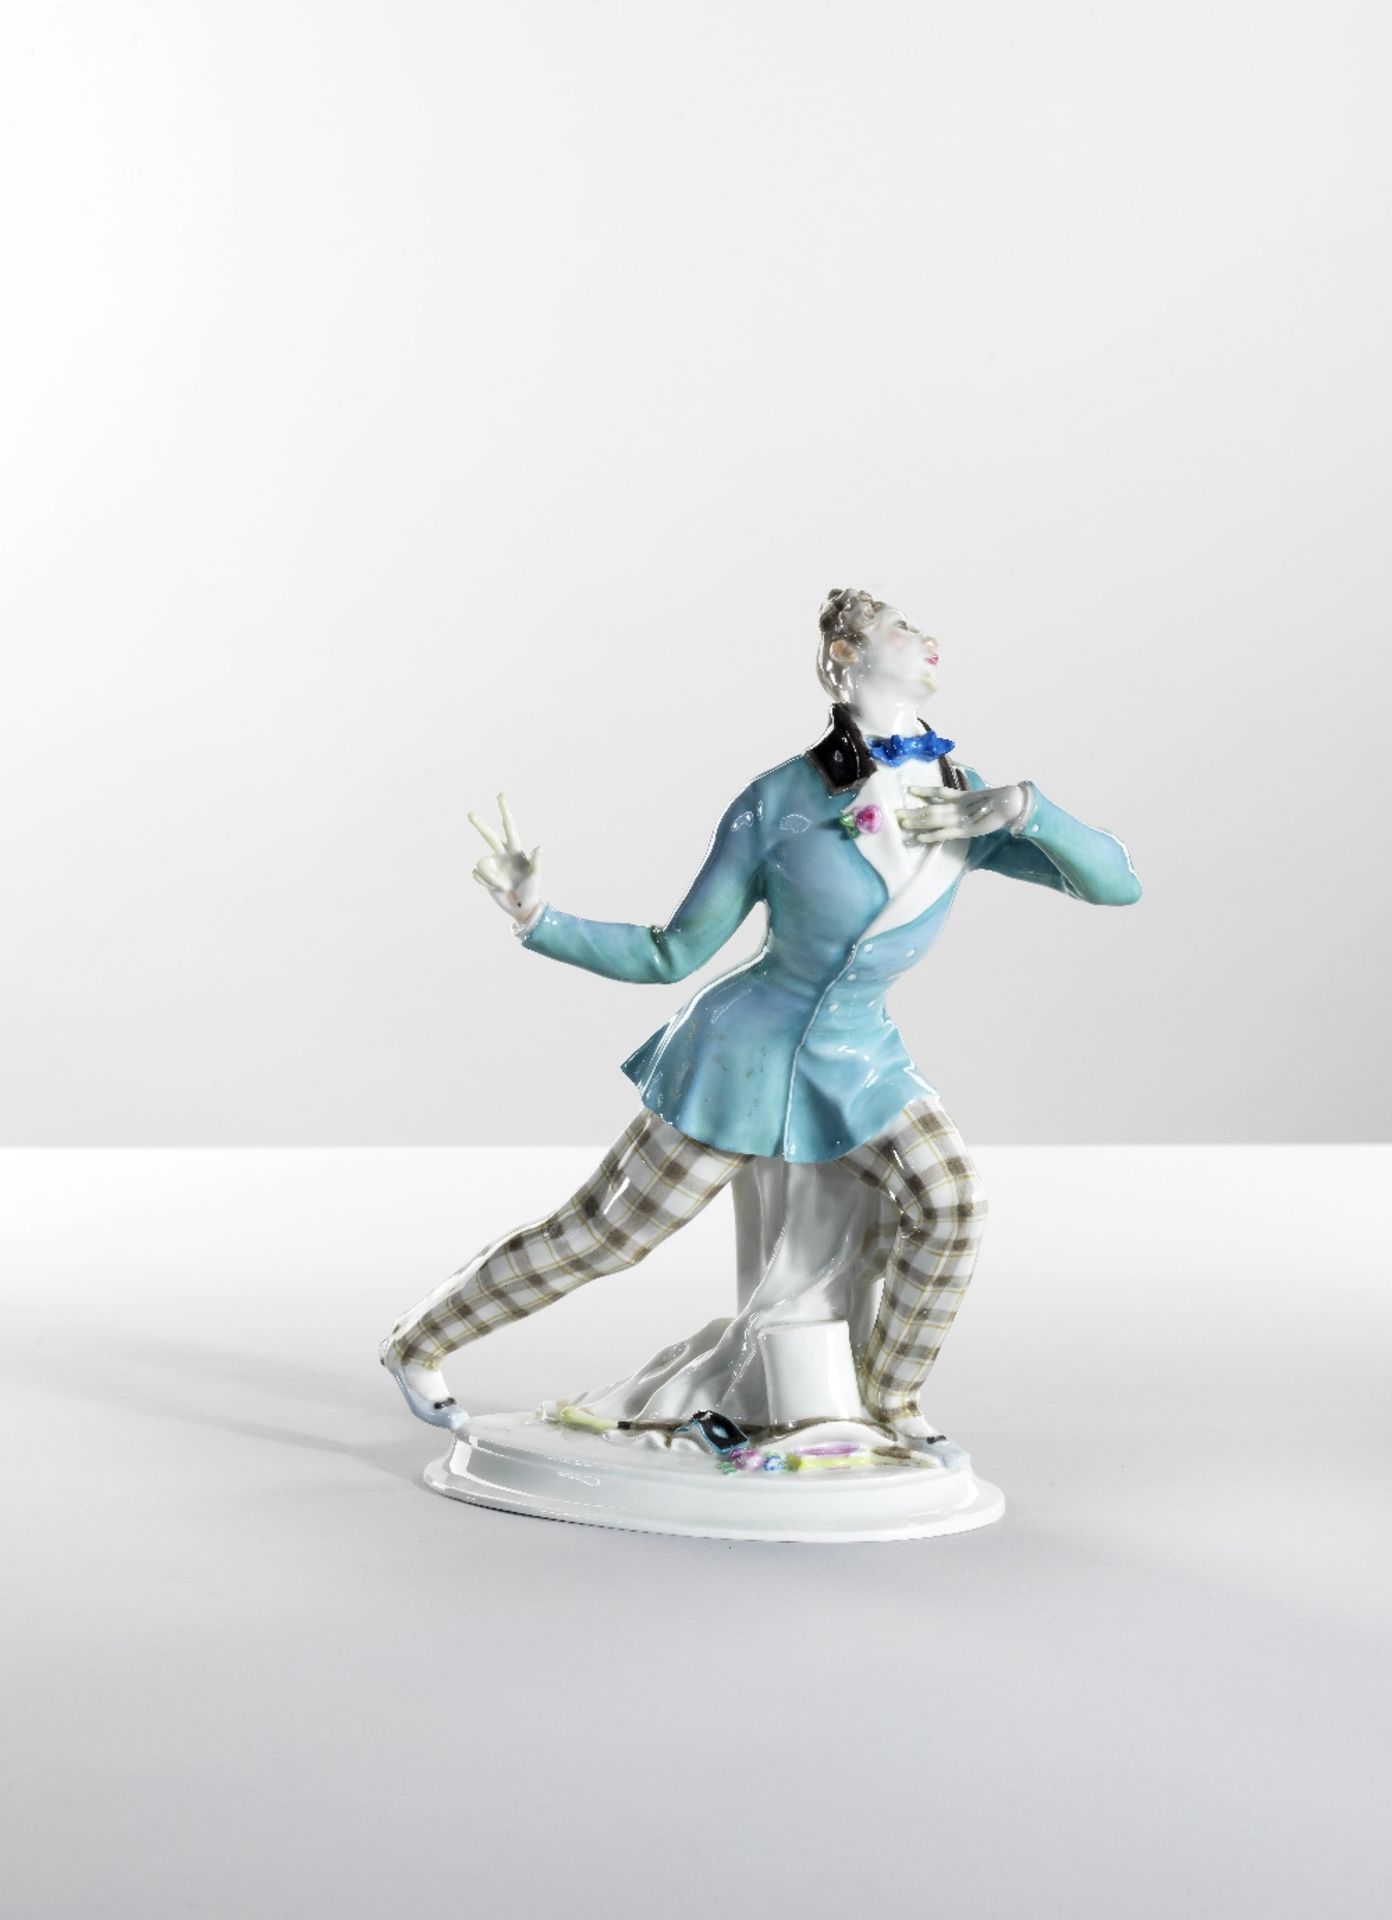 Suite de cinq personnages en porcelaine issus du ballet 'Le Carnaval' des Ballets Russes, circa 1... - Image 3 of 10